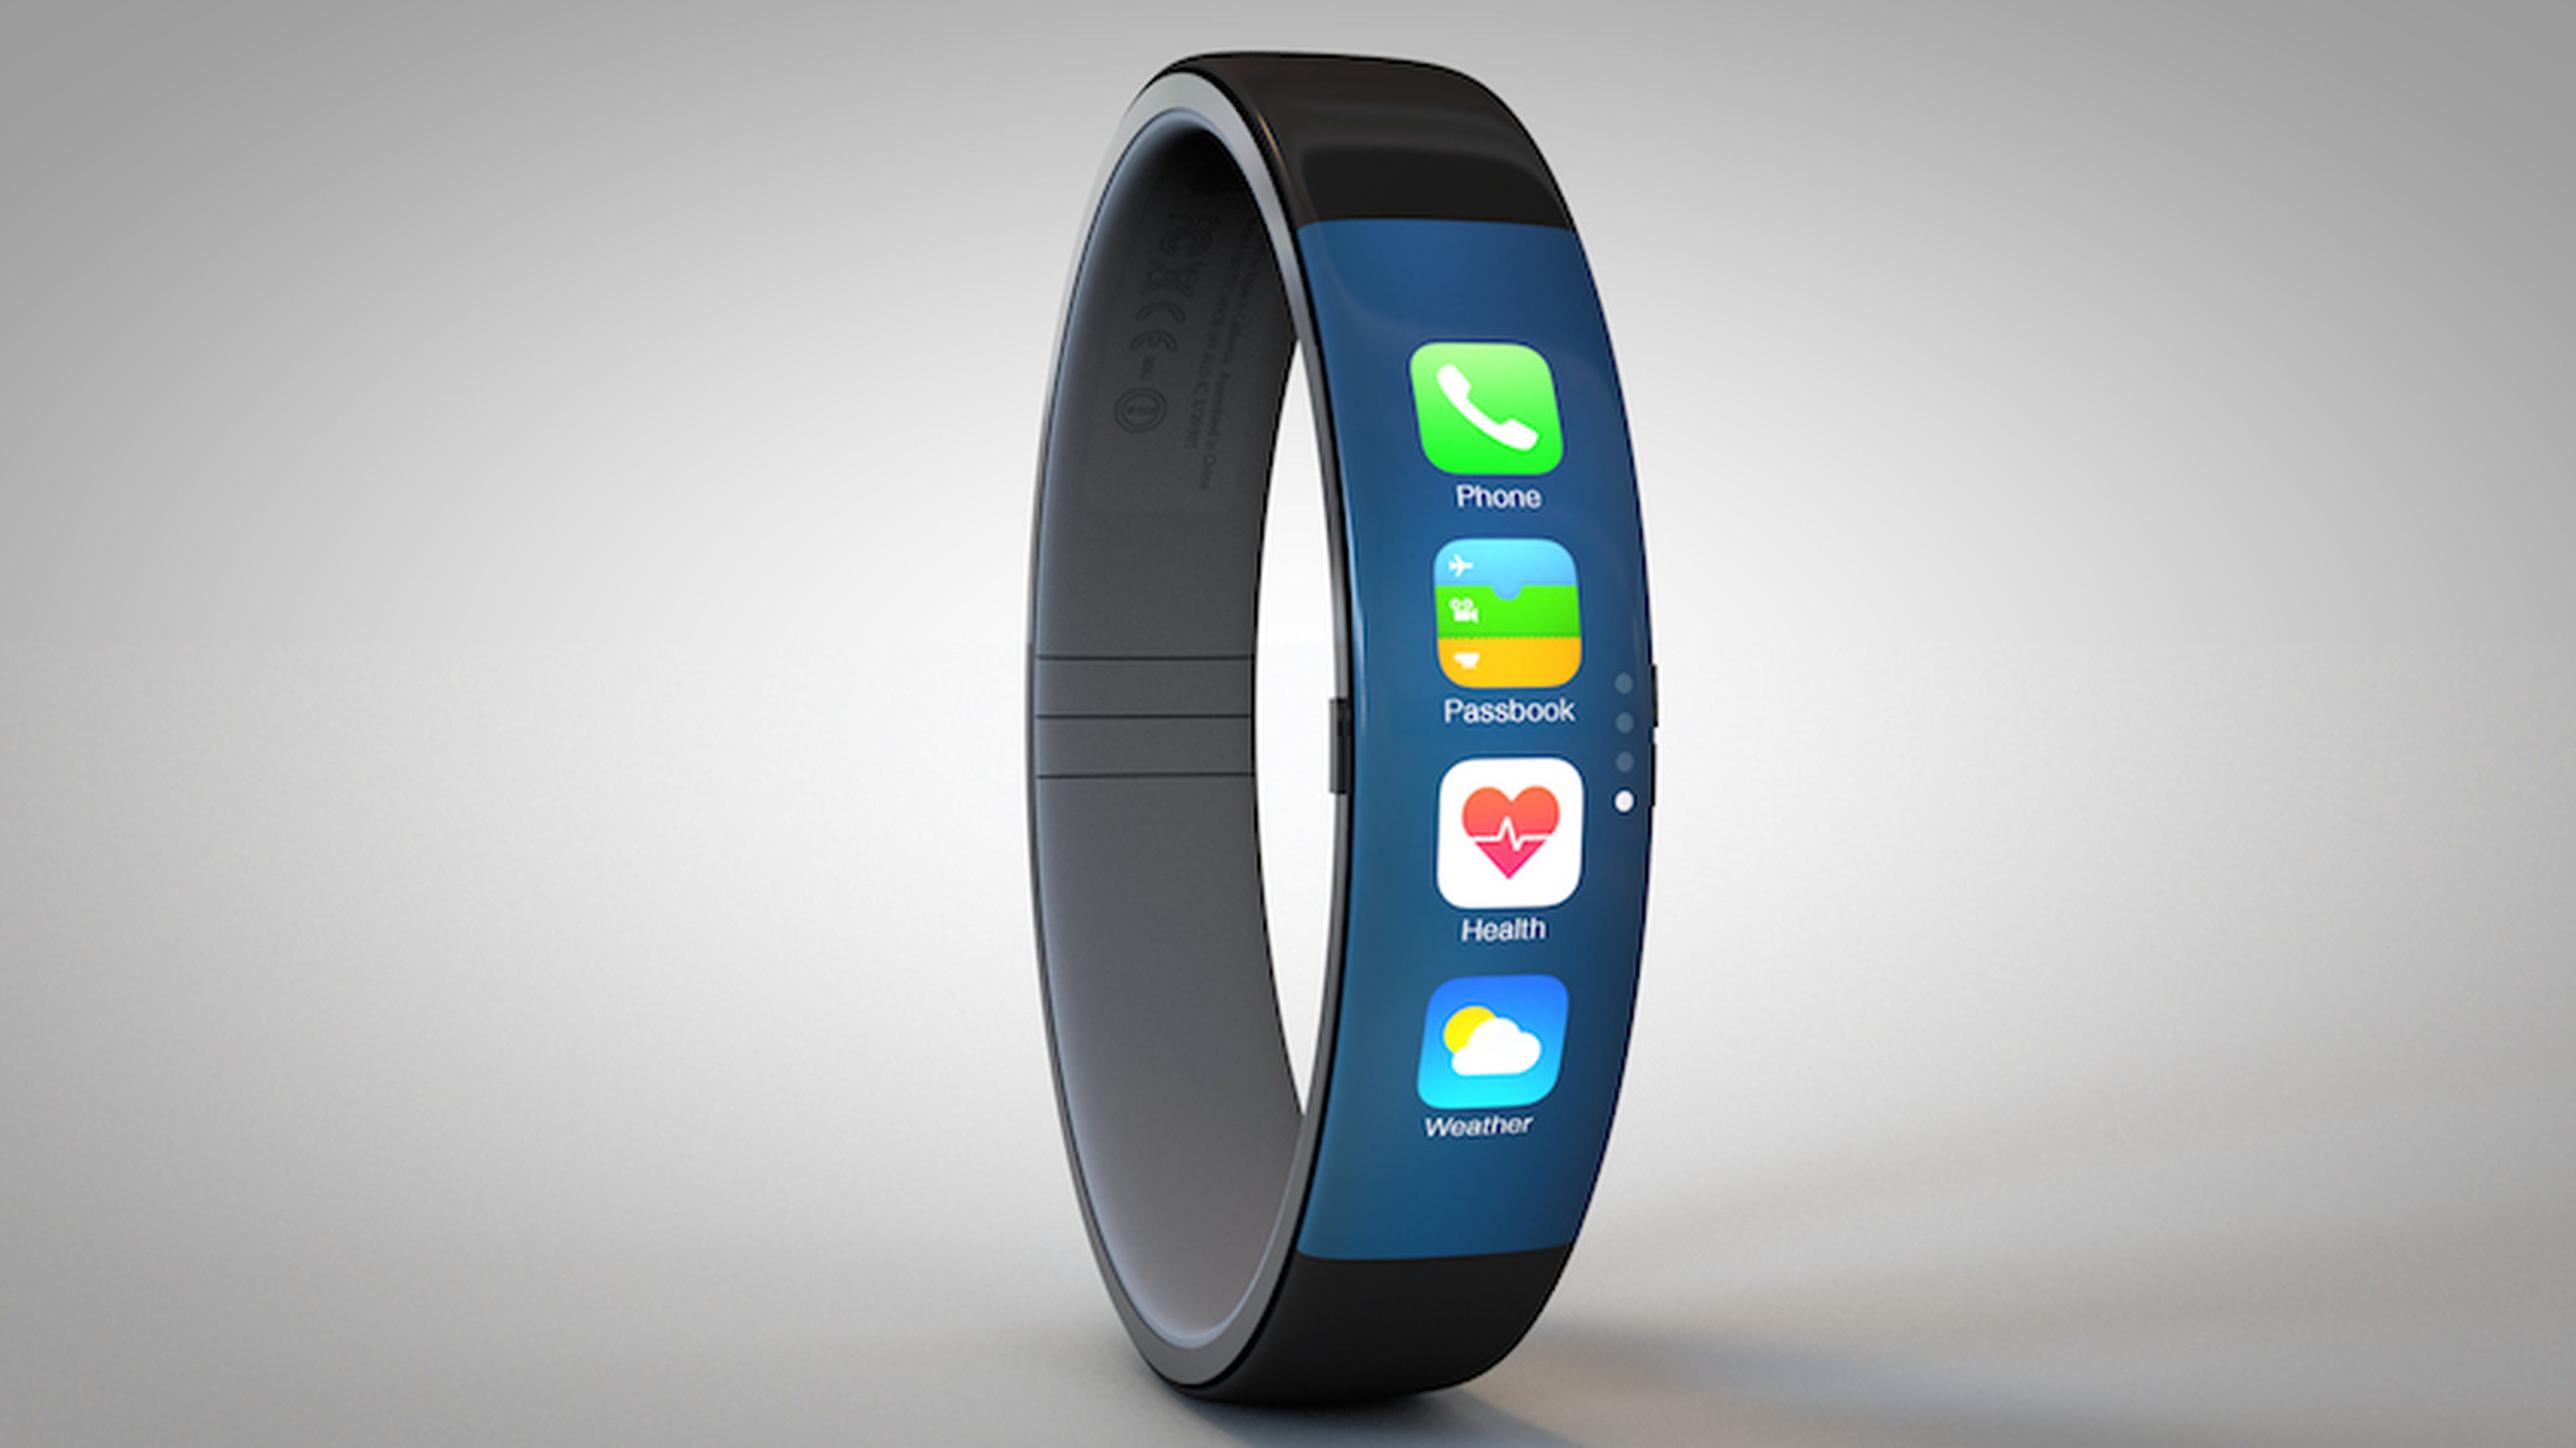 Visible Derribar obesidad El futuro Apple Watch contaría con pantalla flexible | Computer Hoy